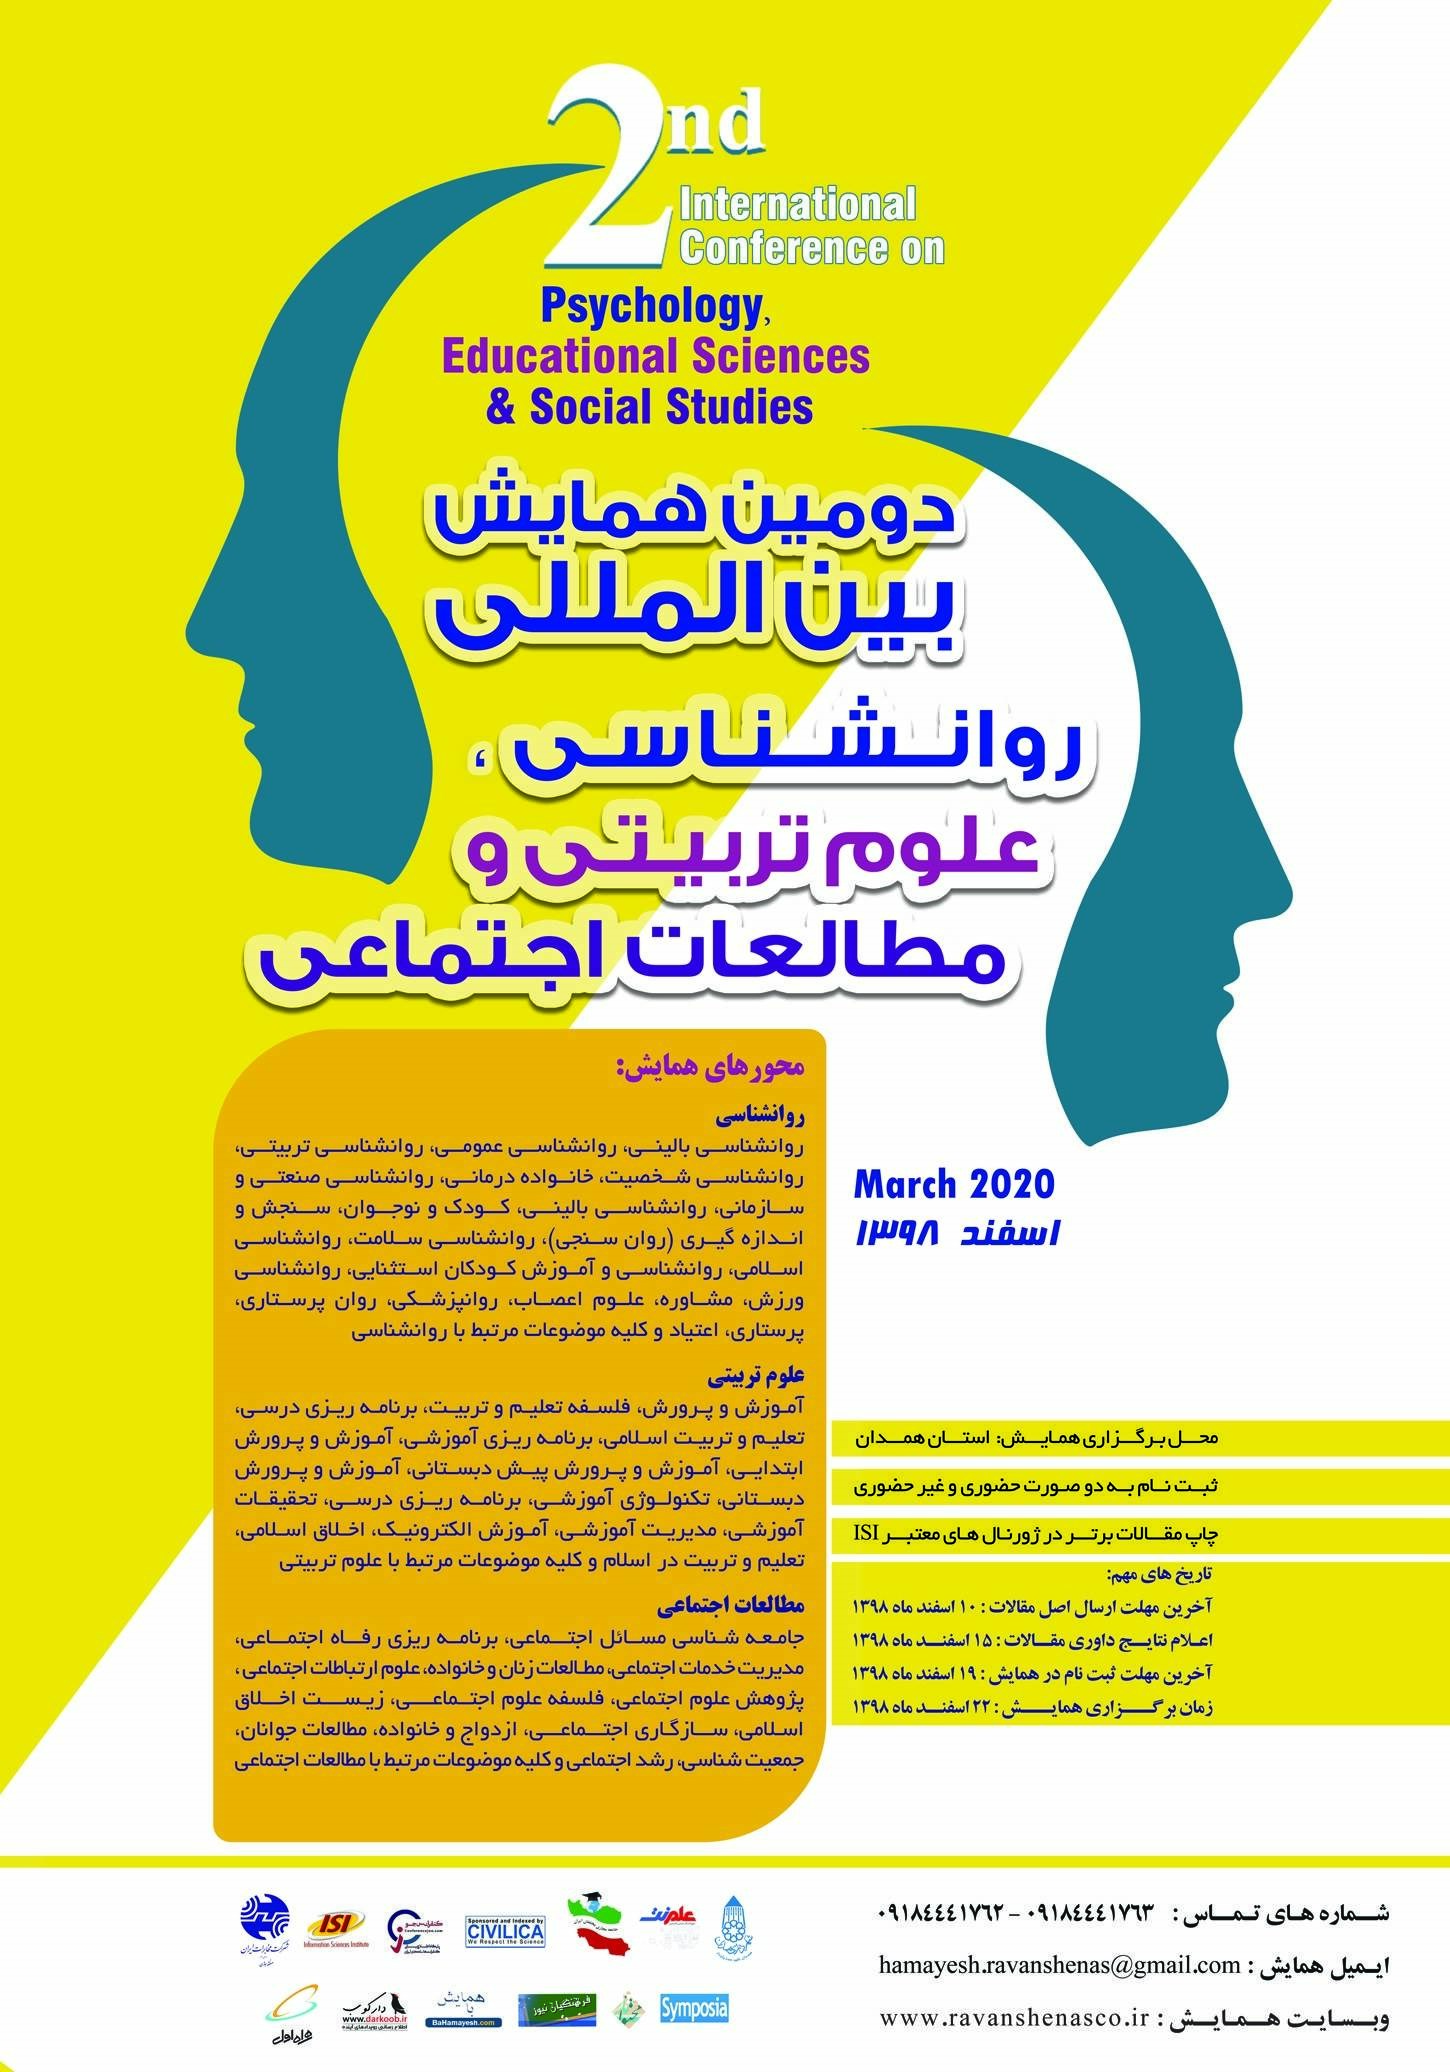 پوستر دومین همایش بین المللی روانشناسی، علوم تربیتی و مطالعات اجتماعی